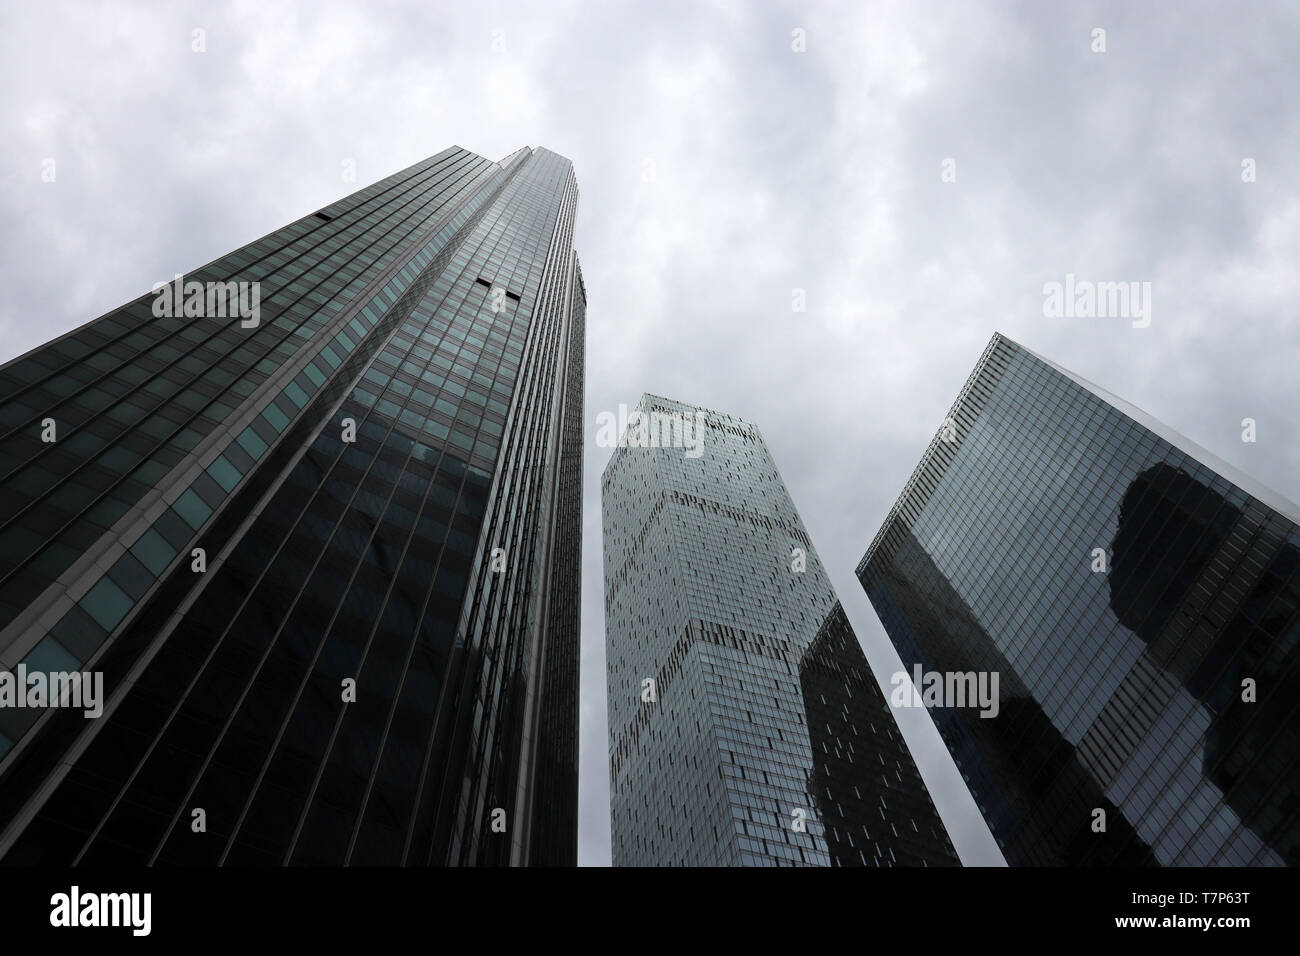 Wolkenkratzer an stürmischen bewölkten Himmel Hintergrund, Ansicht von unten. Futuristischen Stadt mit dramatischen Himmel, moderne Architektur, Urbanisierung Konzept Stockfoto